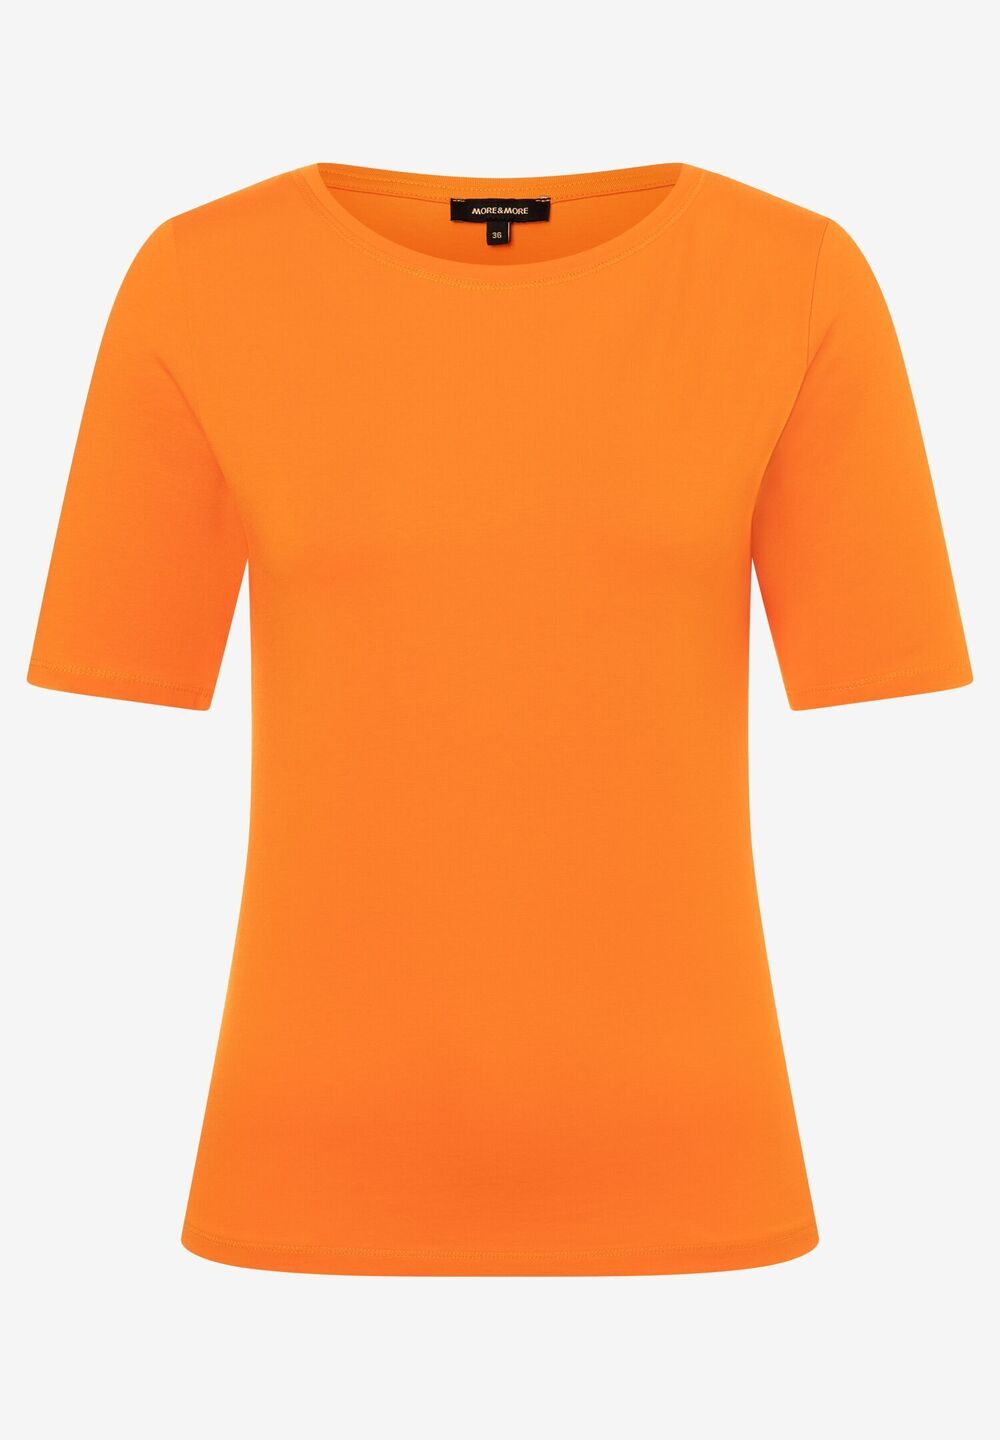 T-Shirt, U-Boot Ausschnitt, fresh orange, Frühjahrs-Kollektion, orangeDetailansicht 1